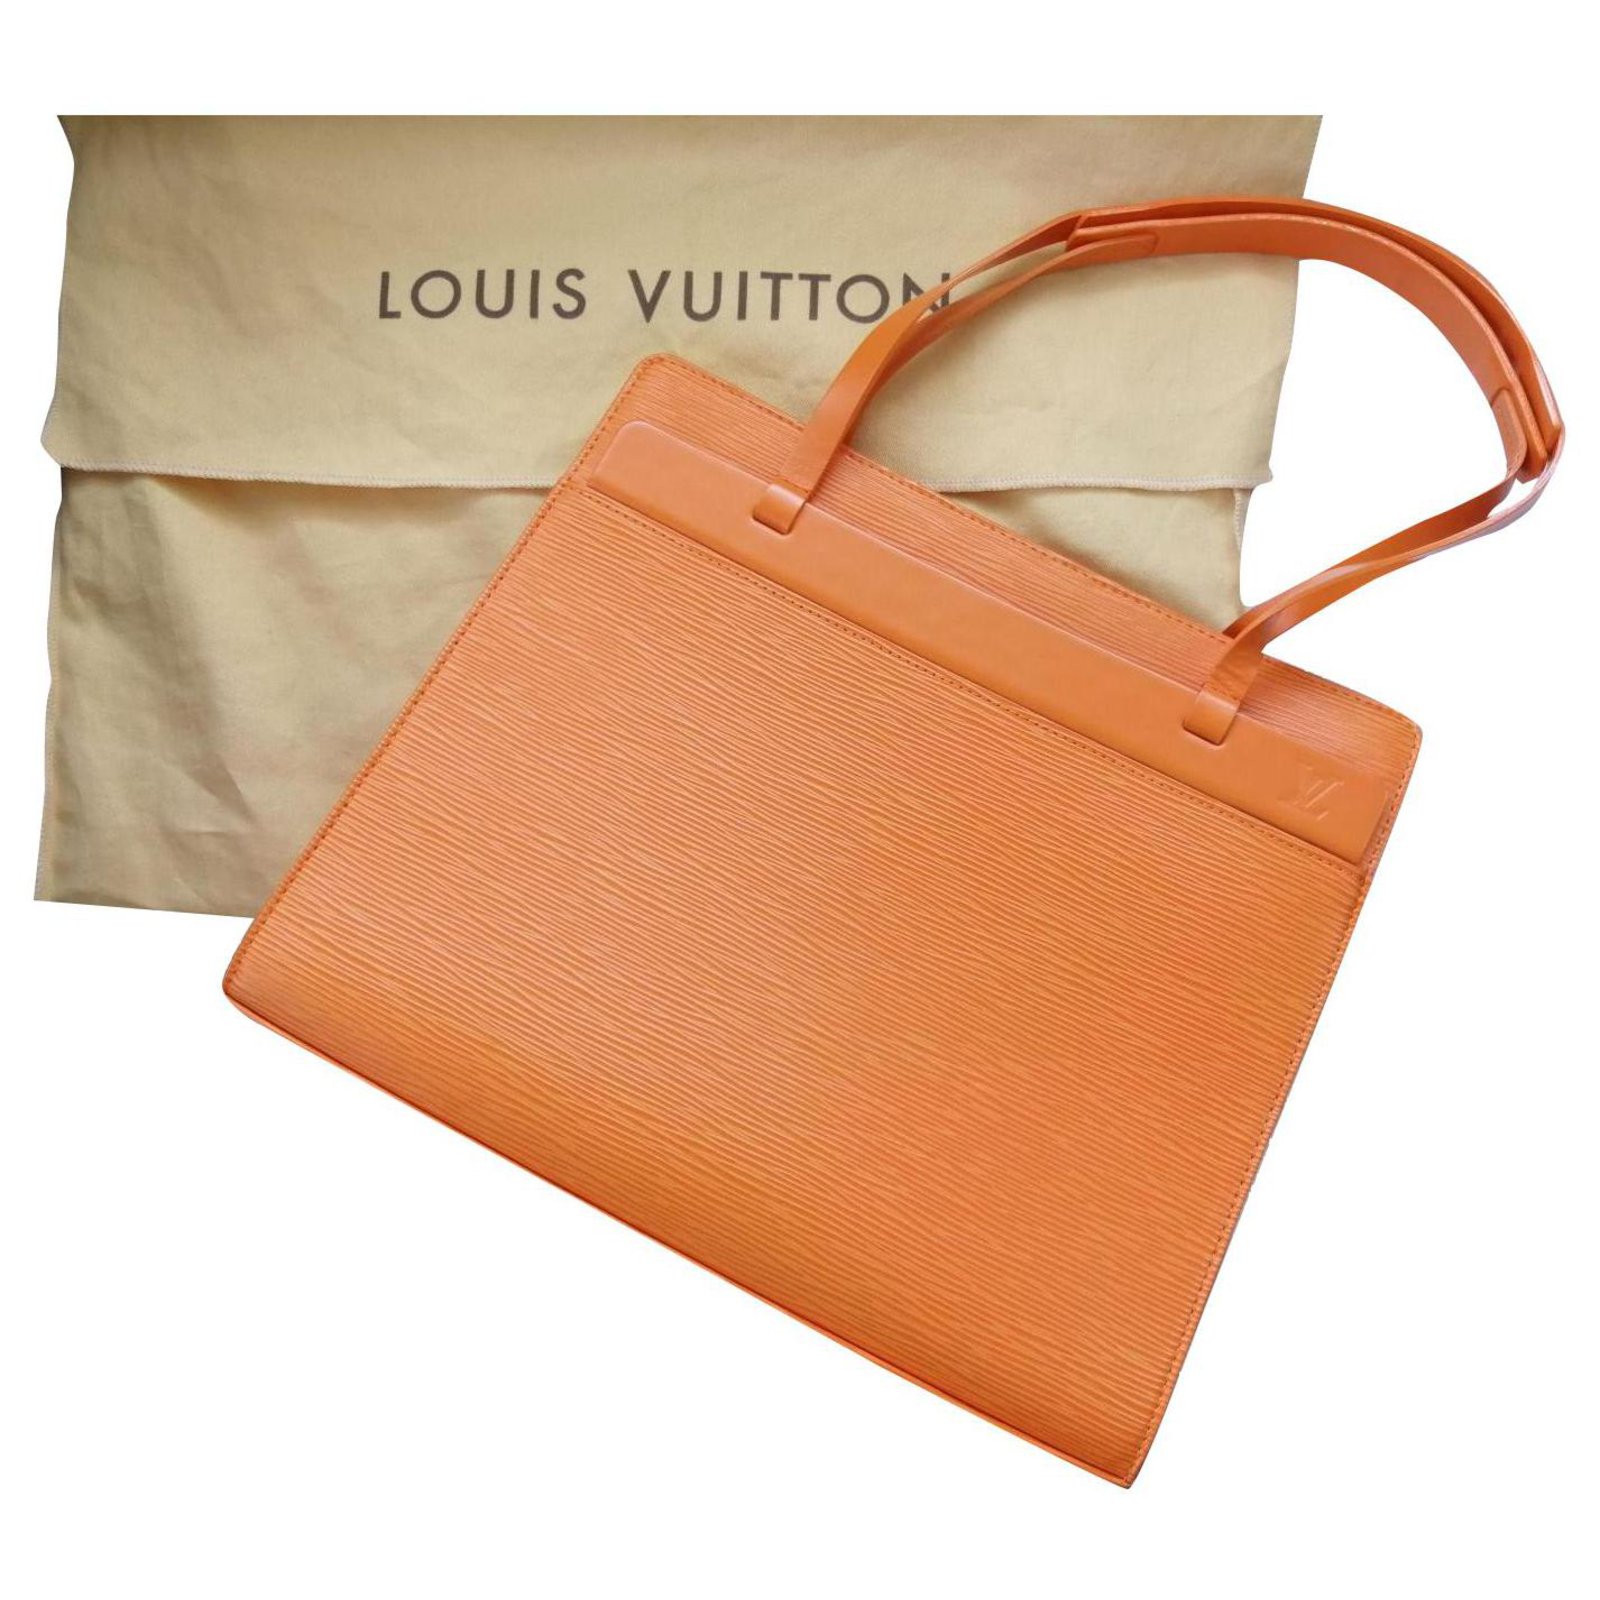 Louis Vuitton Croissette bag  Bags, Louis vuitton bag, Louis vuitton  handbags